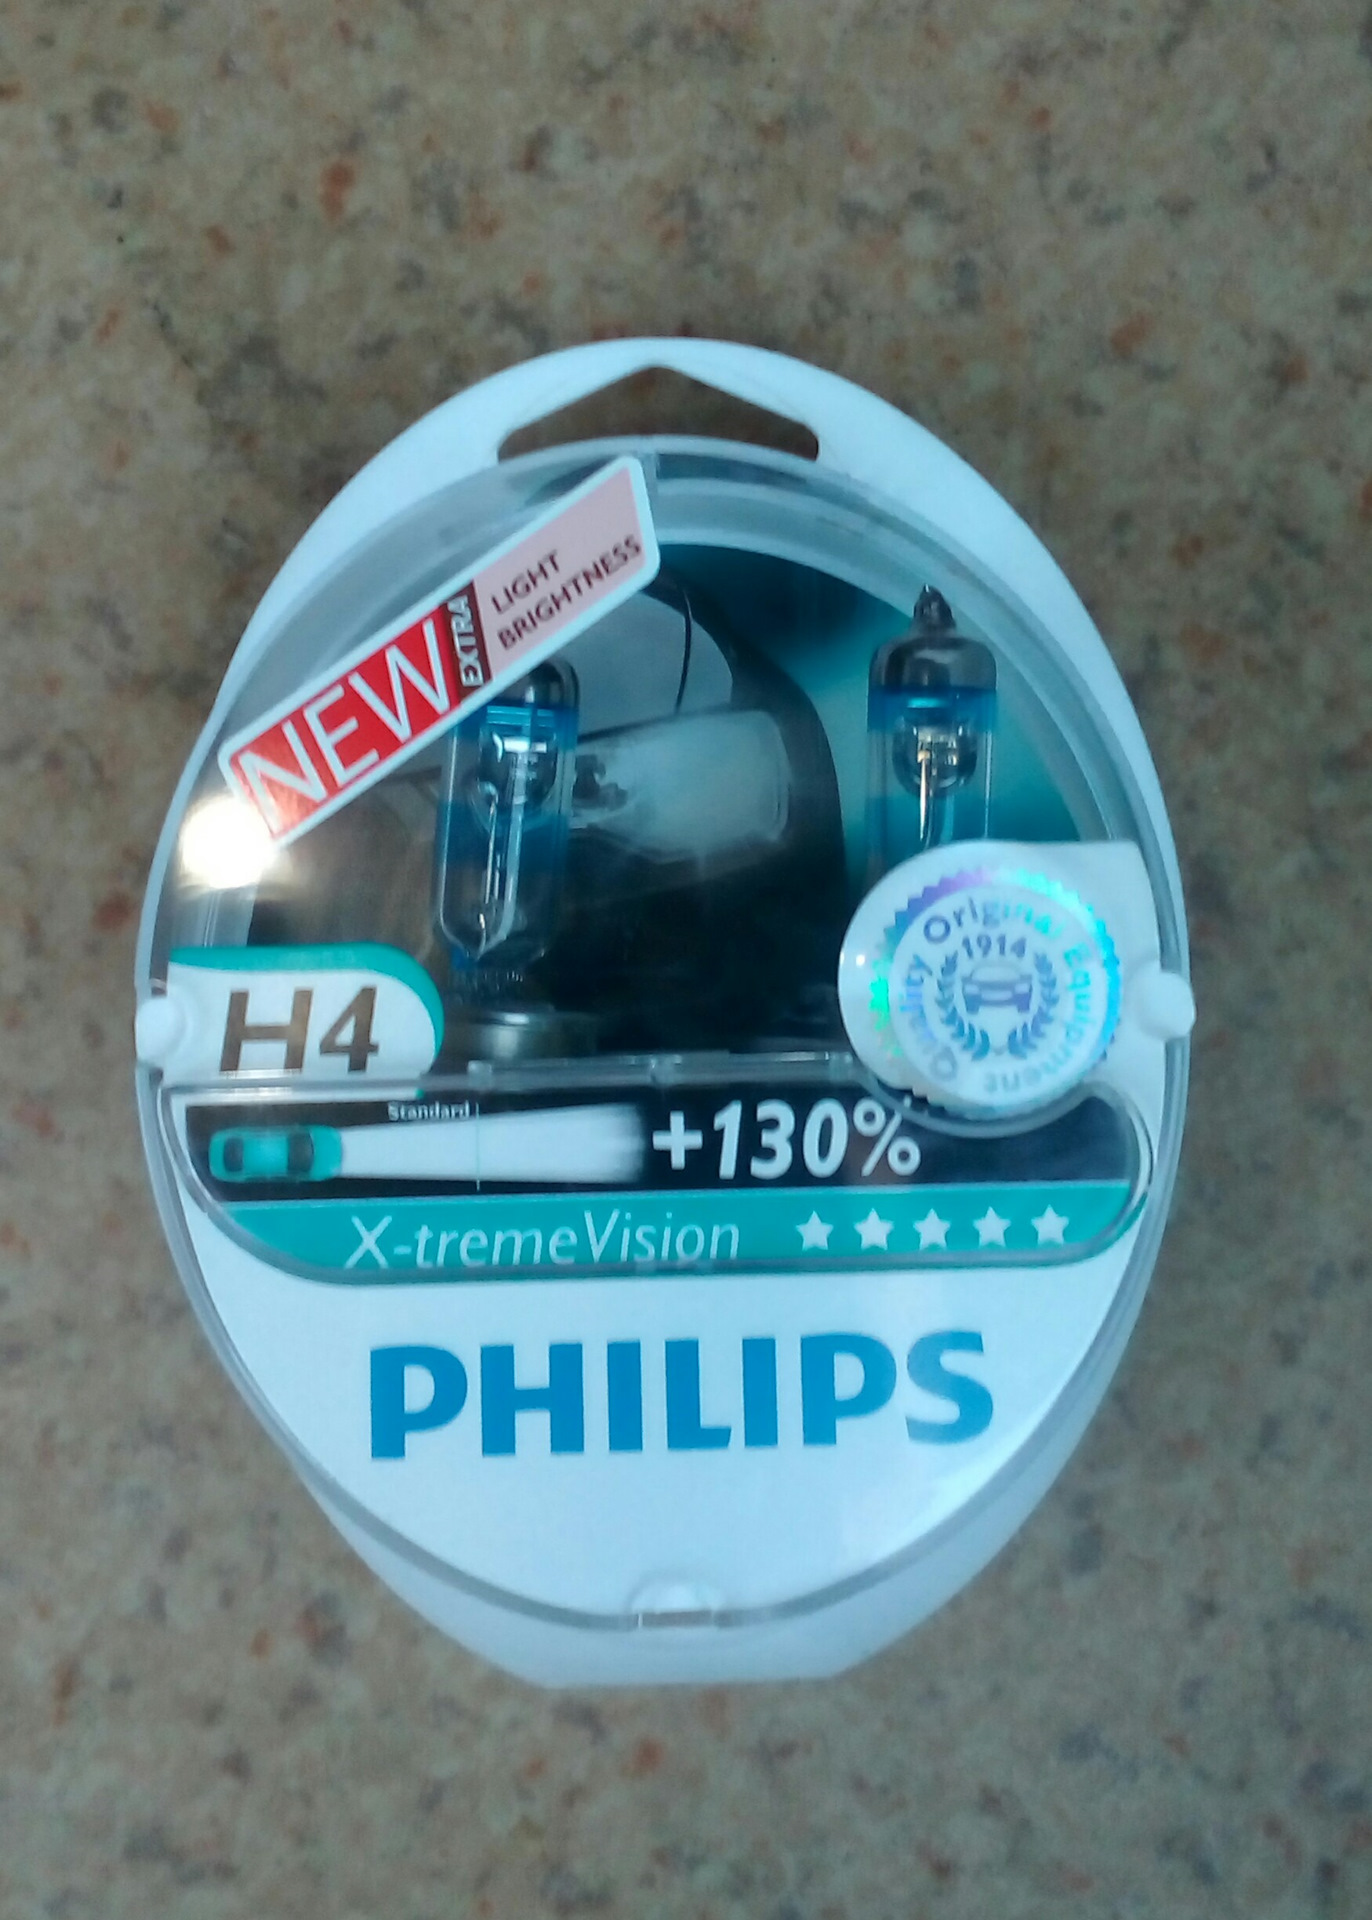 Филипс 130. Philips x-treme Vision +130%. Xtreme Vision. Philips x treme Vision 130 h4 отзывы. ВИЗИОН 130 33.